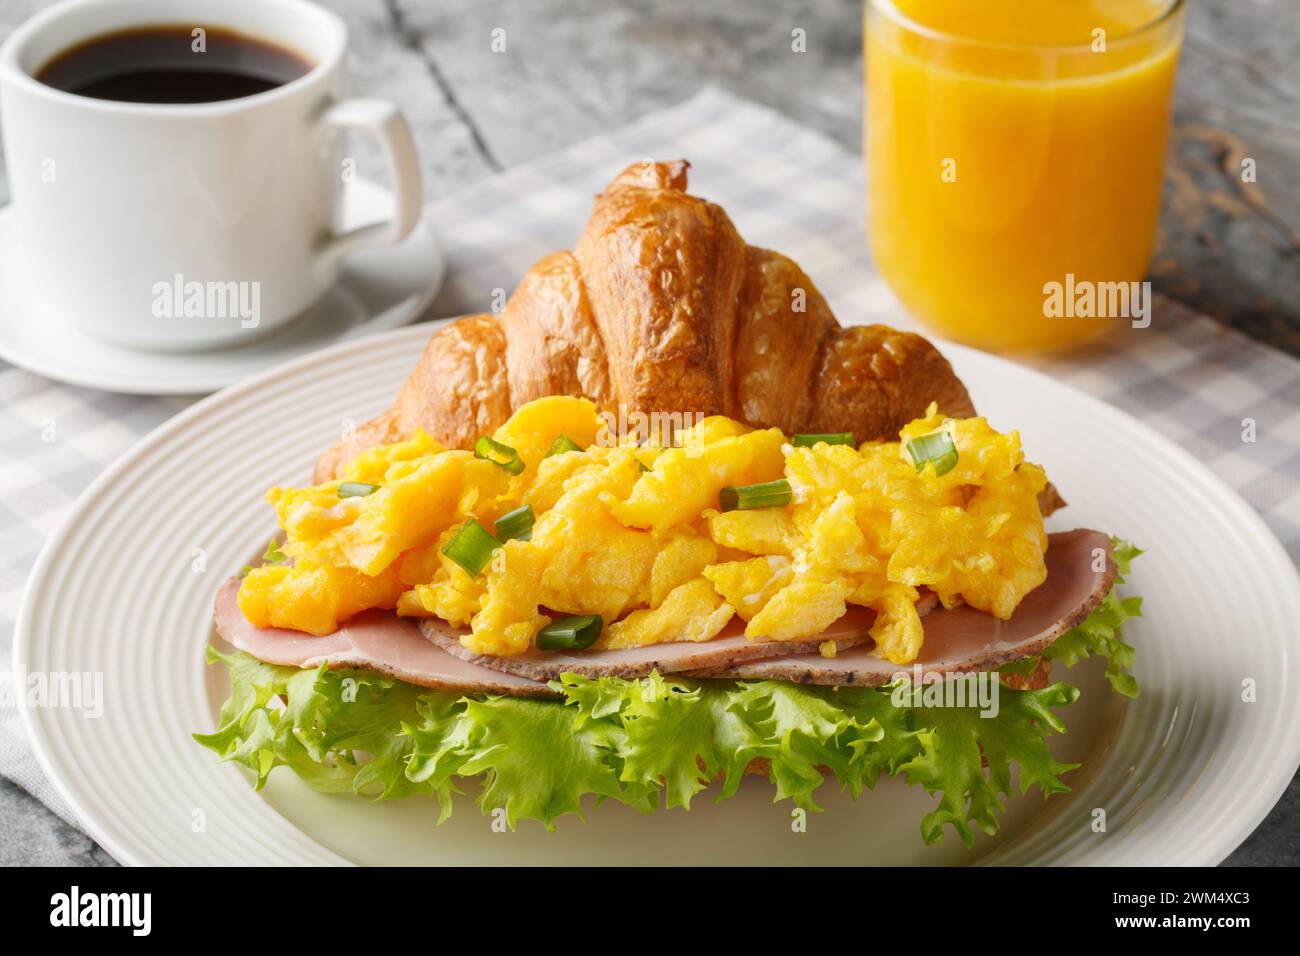 Petit déjeuner sandwich croissant avec œufs brouillés et jambon servi avec jus d'orange et café gros plan sur une table en marbre. Horizontal Banque D'Images